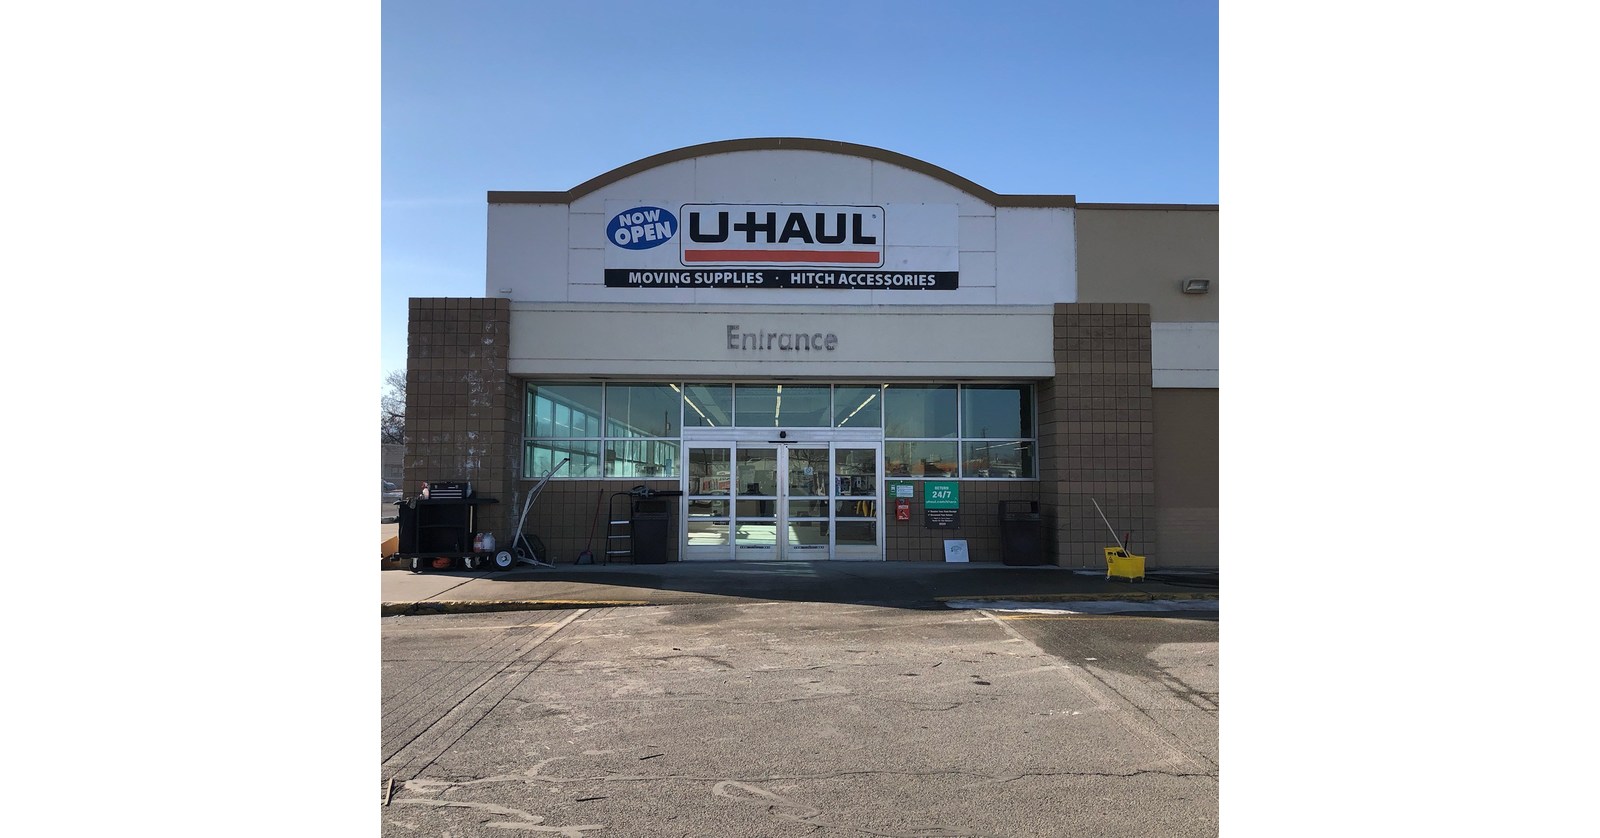 Moving in Spokane UHaul Converting Former Kmart for New Store